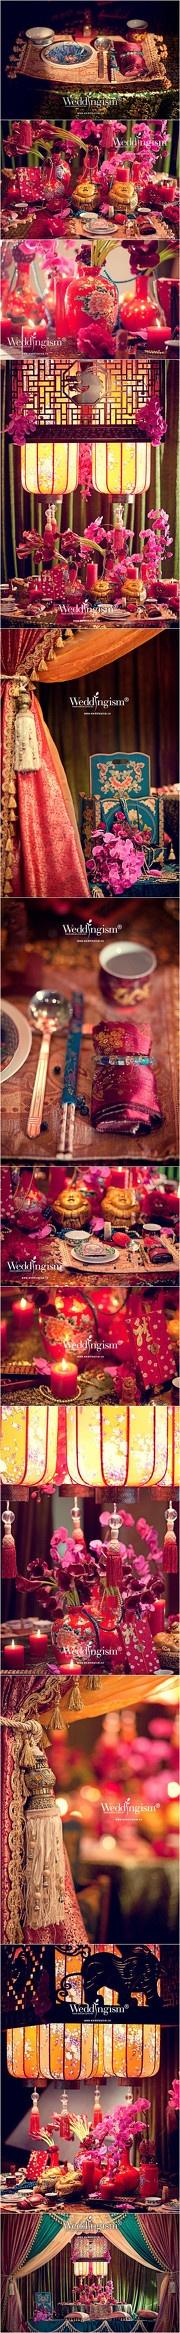 زفاف - الزفاف الصينية 喜 喜